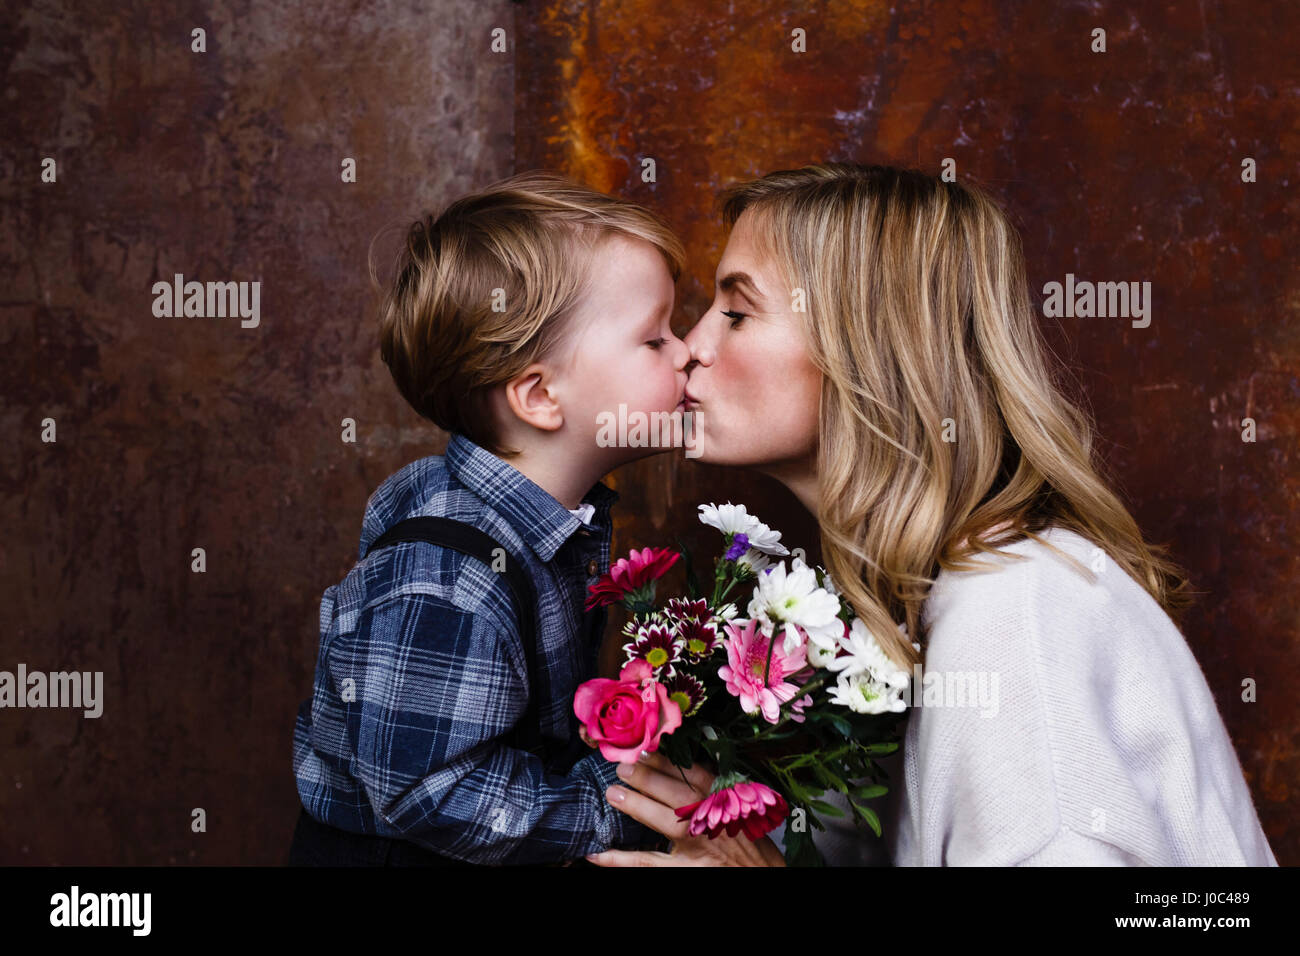 Jeune garçon donnant bouquet de fleurs à sa mère, mother kissing boy Banque D'Images